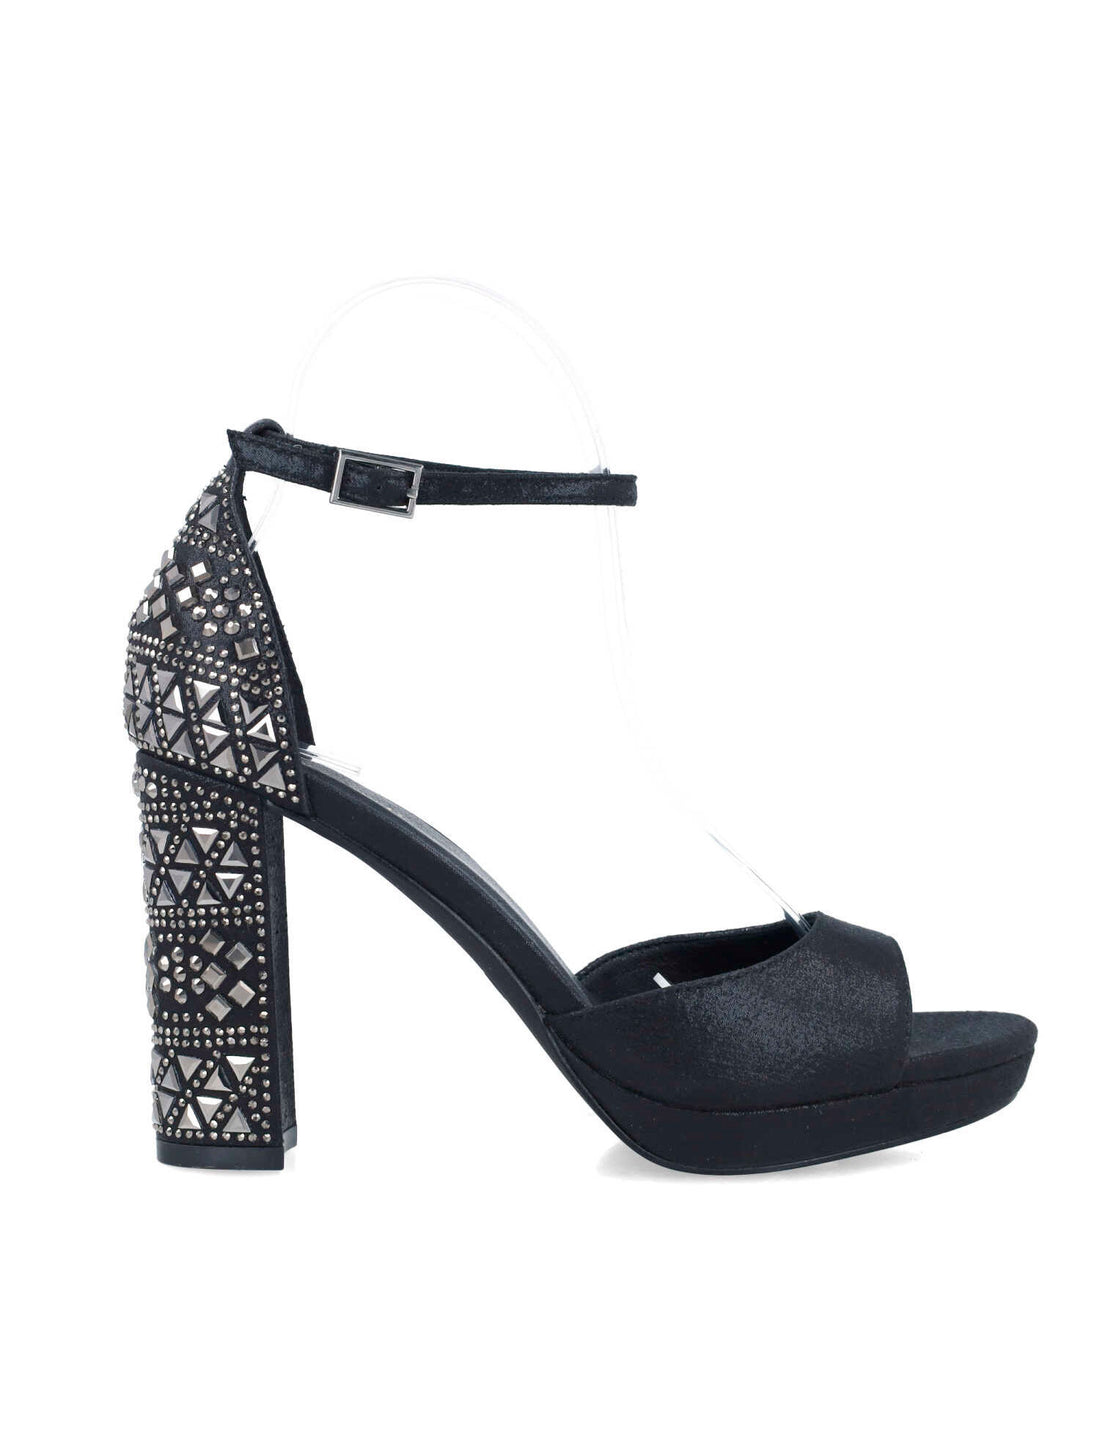 Black Embellished High-Heel Sandals_24879_01_01